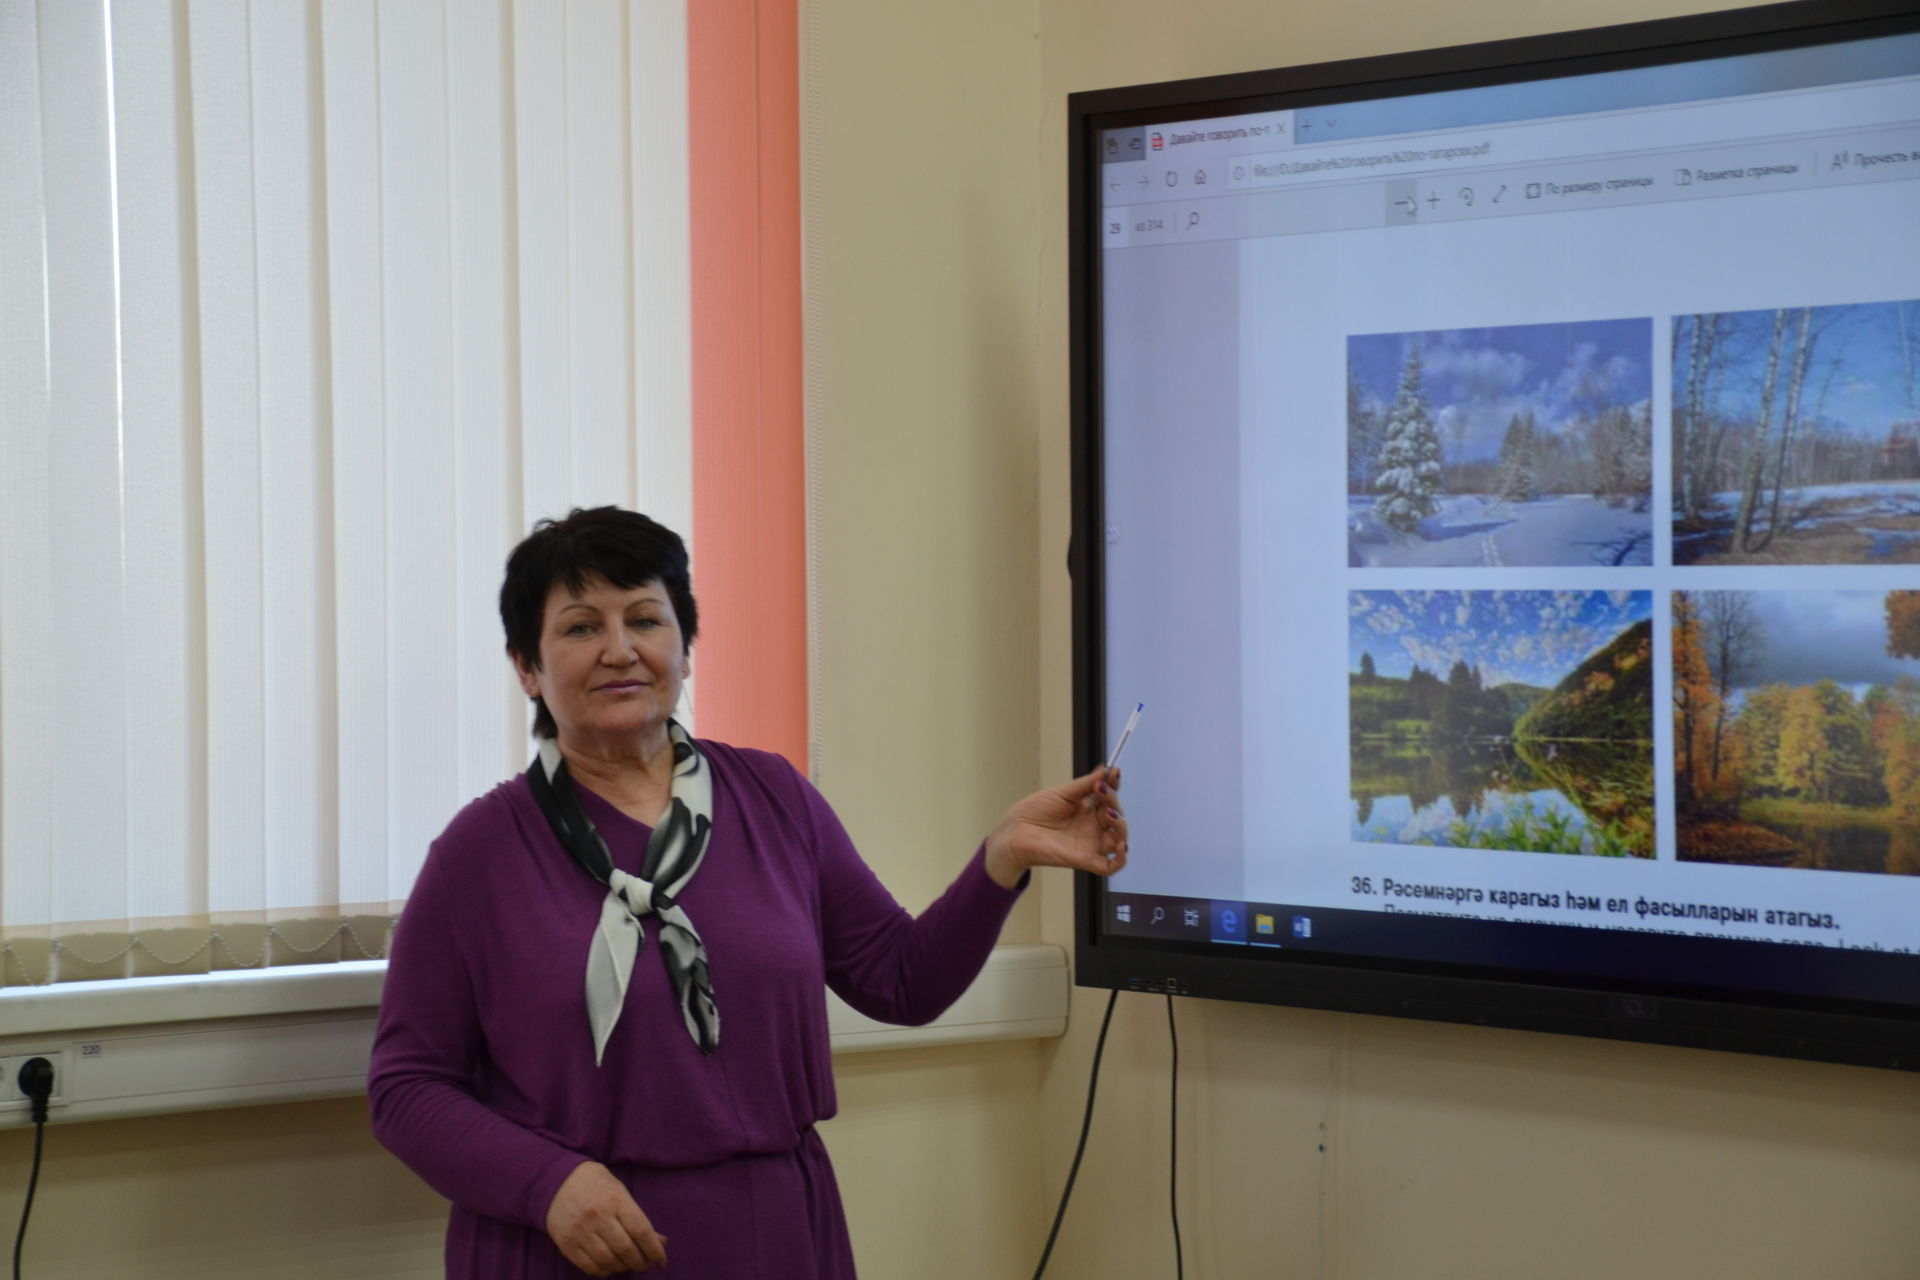 Работники бюджетной сферы Мензелинского района изучают татарский язык